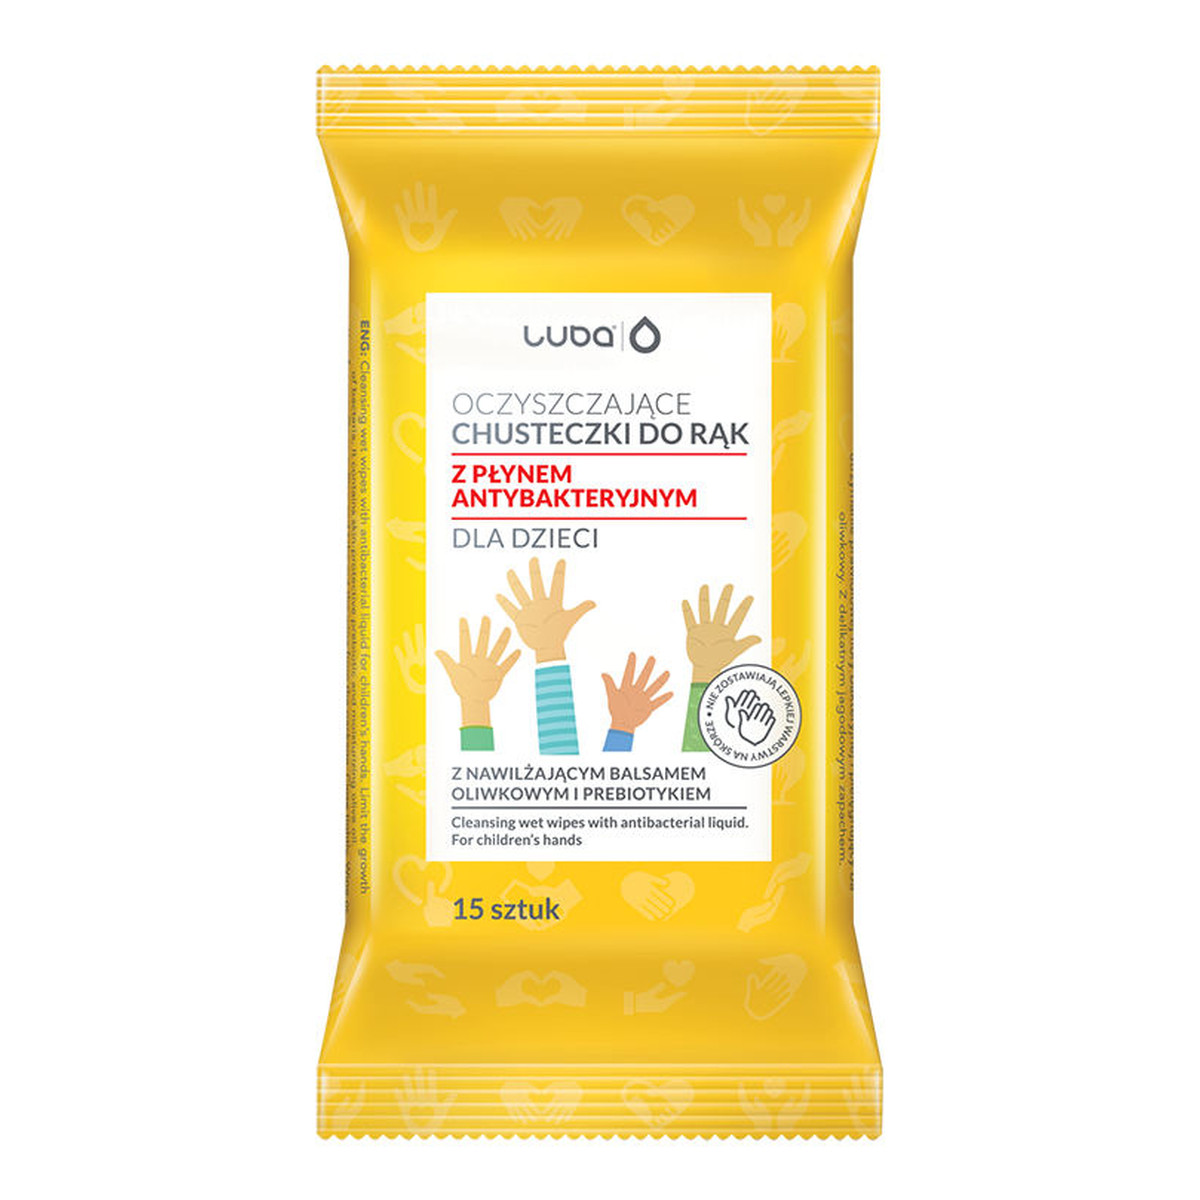 Luba Chusteczki oczyszczające do rąk z płynem antybakteryjnym dla dzieci